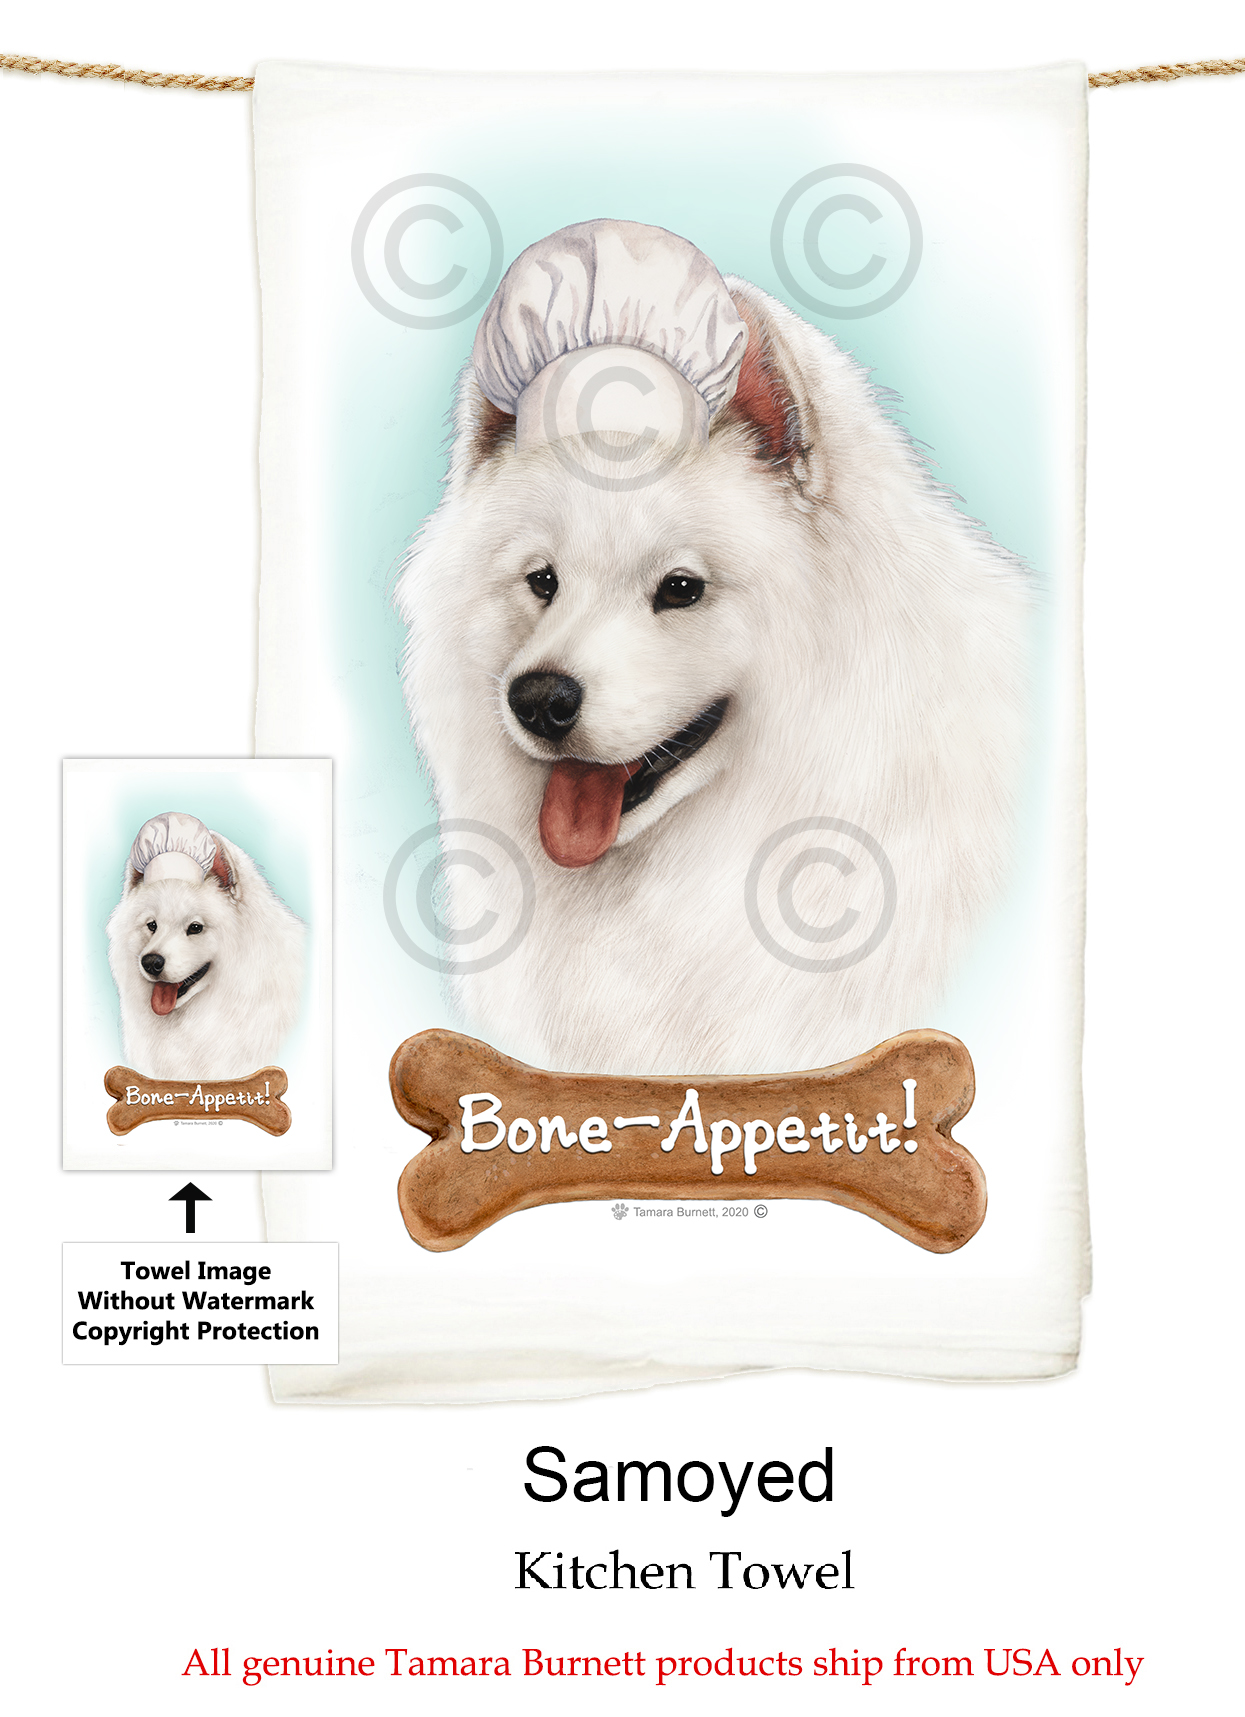 Samoyed - Flour Sack Towel image sized 1245 x 1717